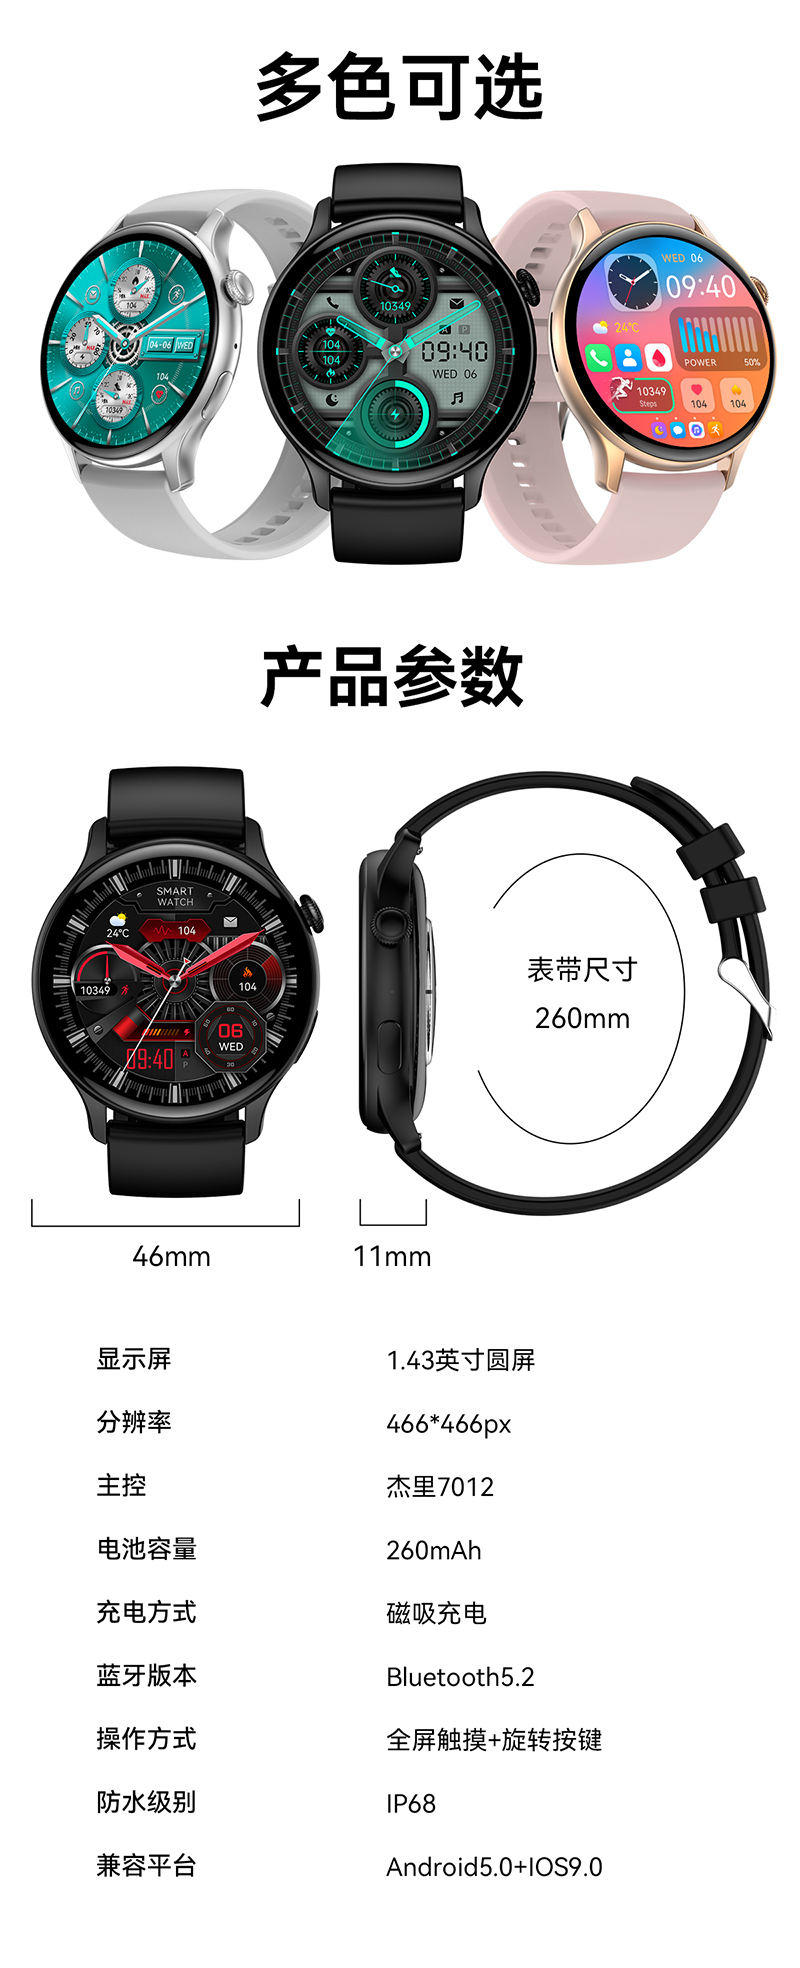 LEFIT勒菲特HK85支付型智能蓝牙通话手表多功能健康防水手表